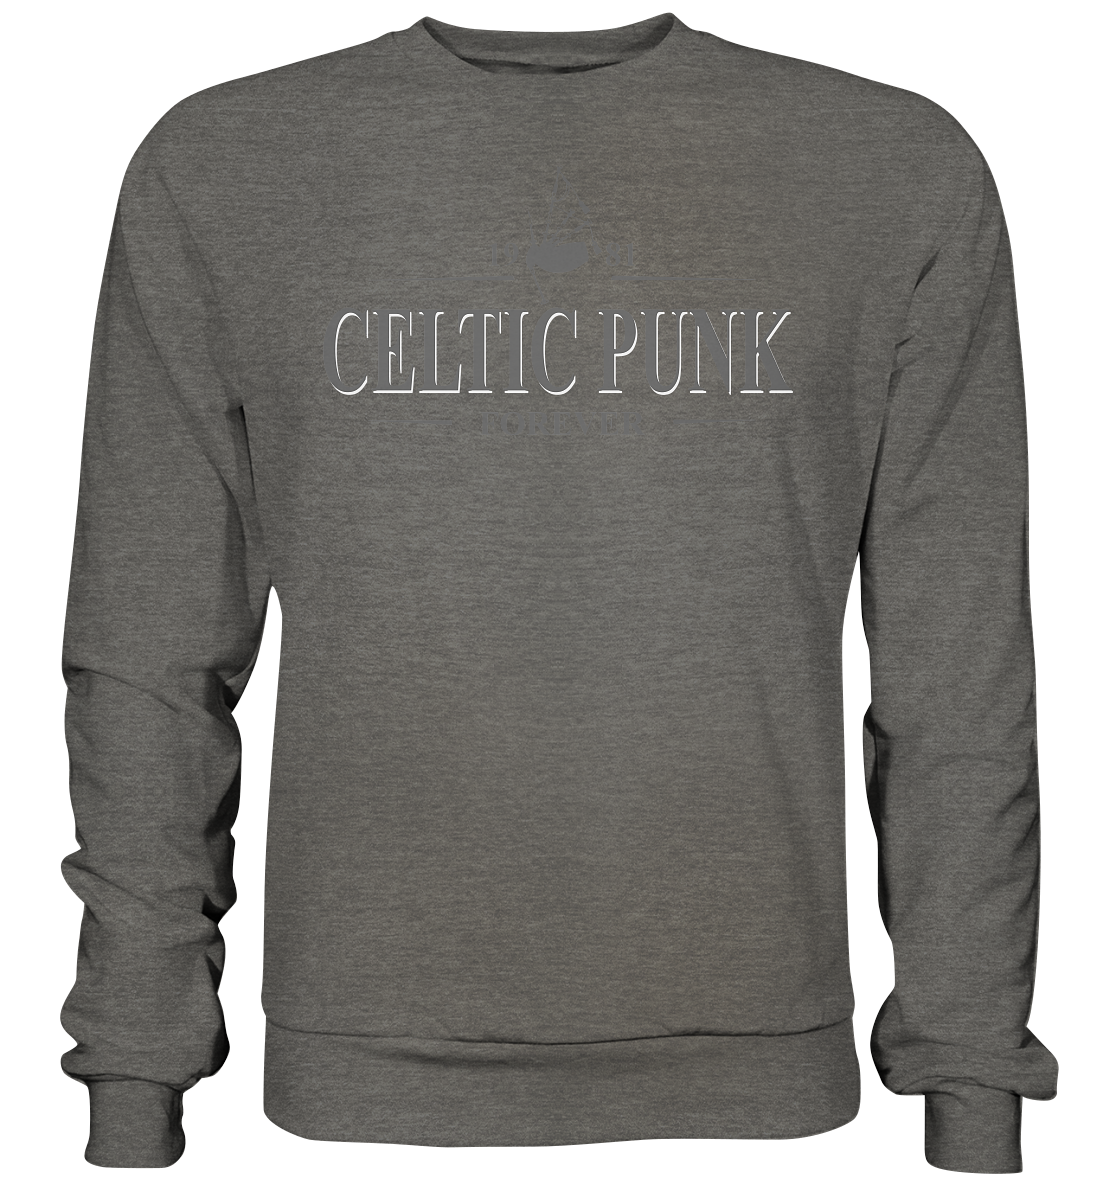 Celtic Punk "Forever" - Basic Sweatshirt